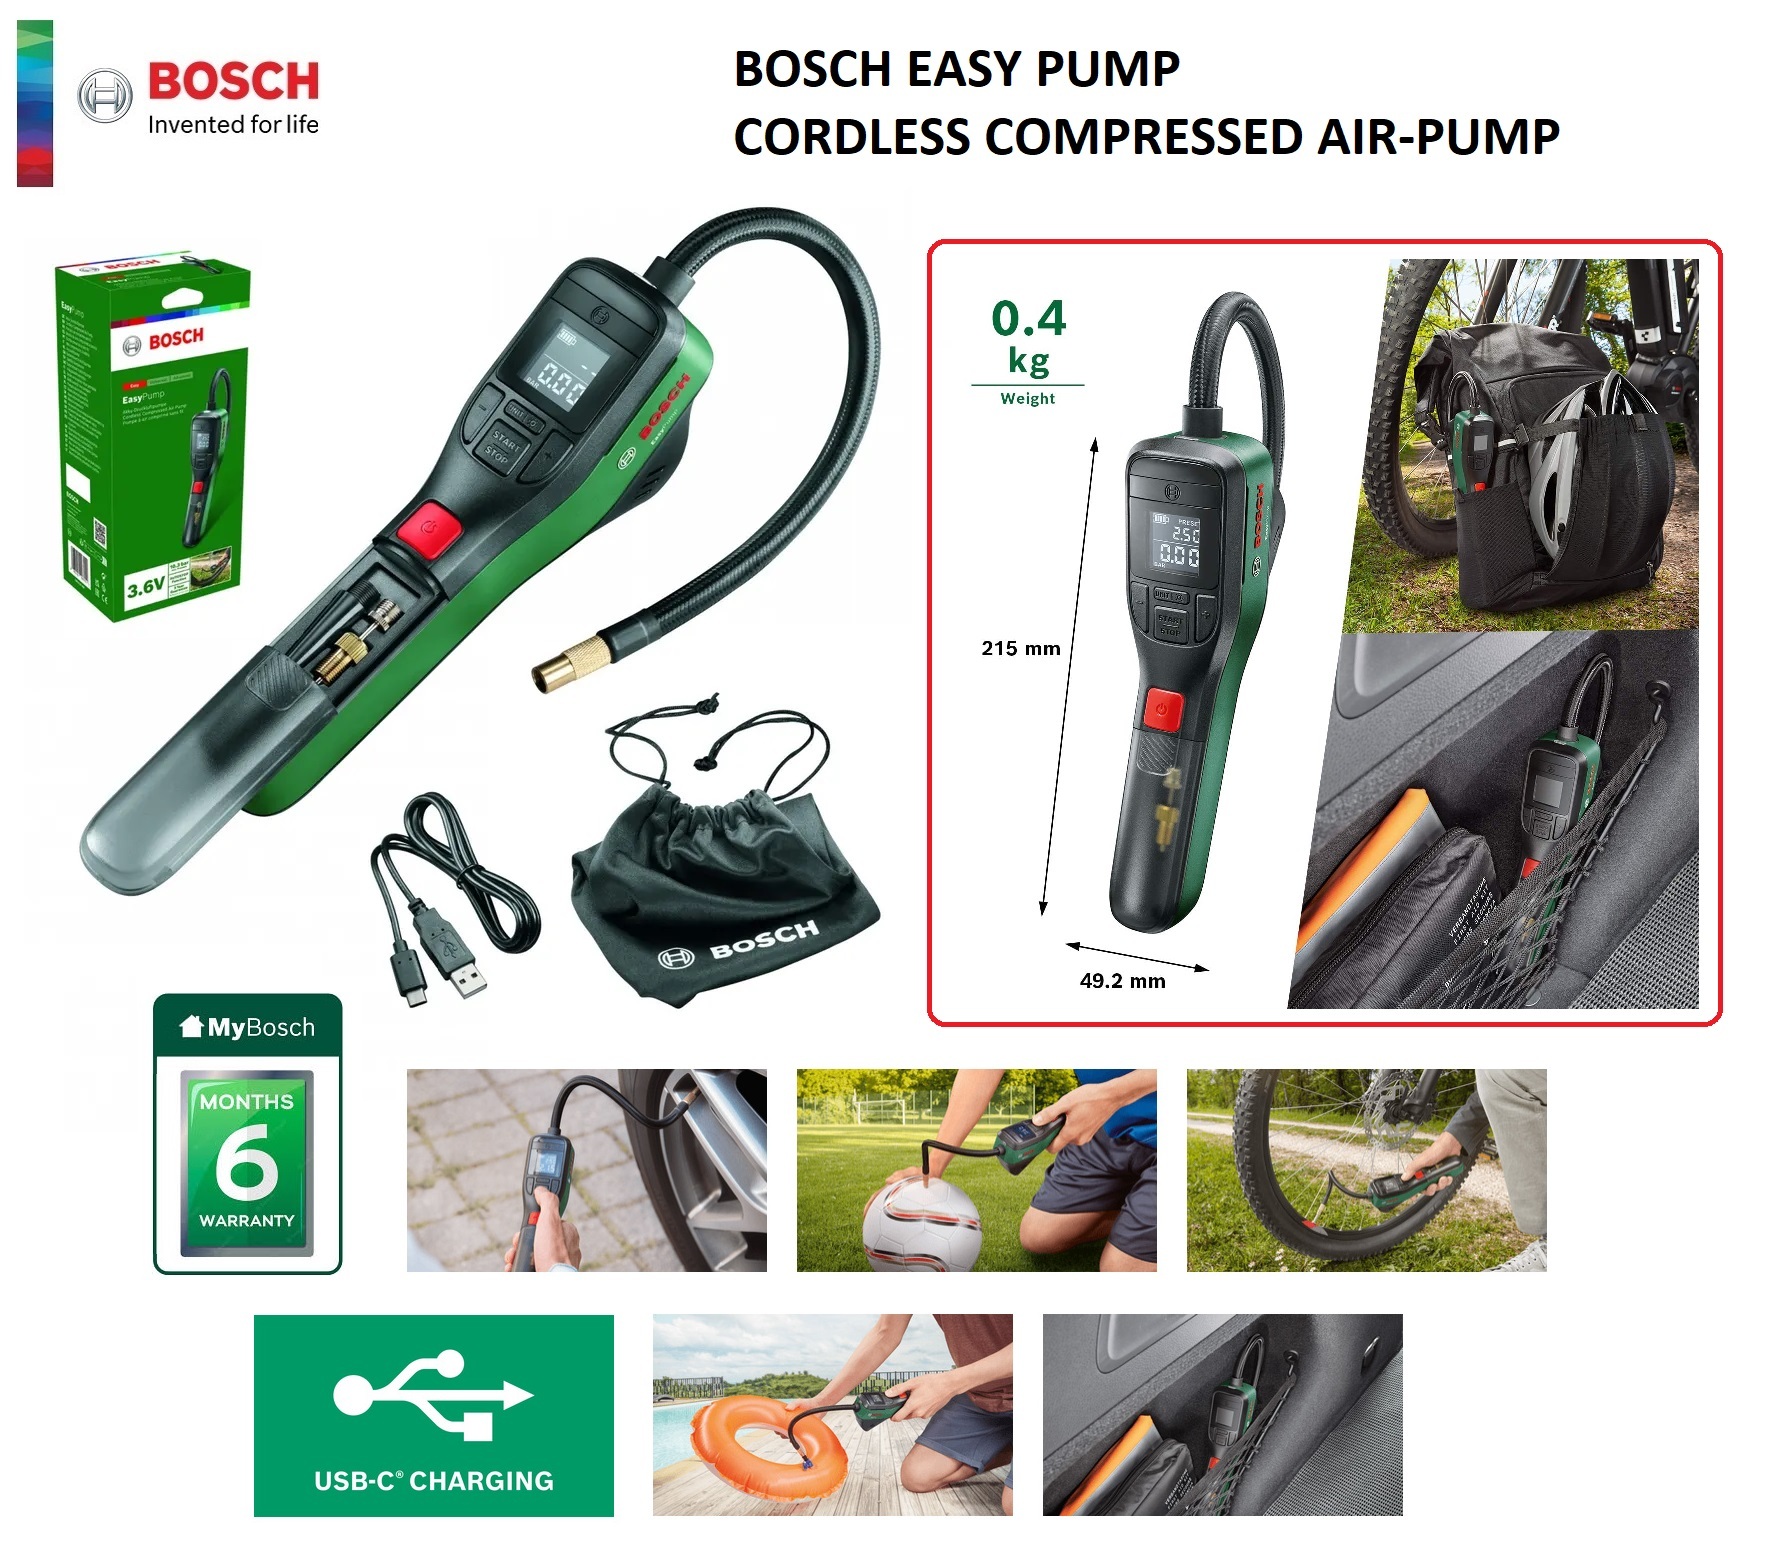 Bosch Home and Garden Pneumatic pump EasyPump 10.3 bar